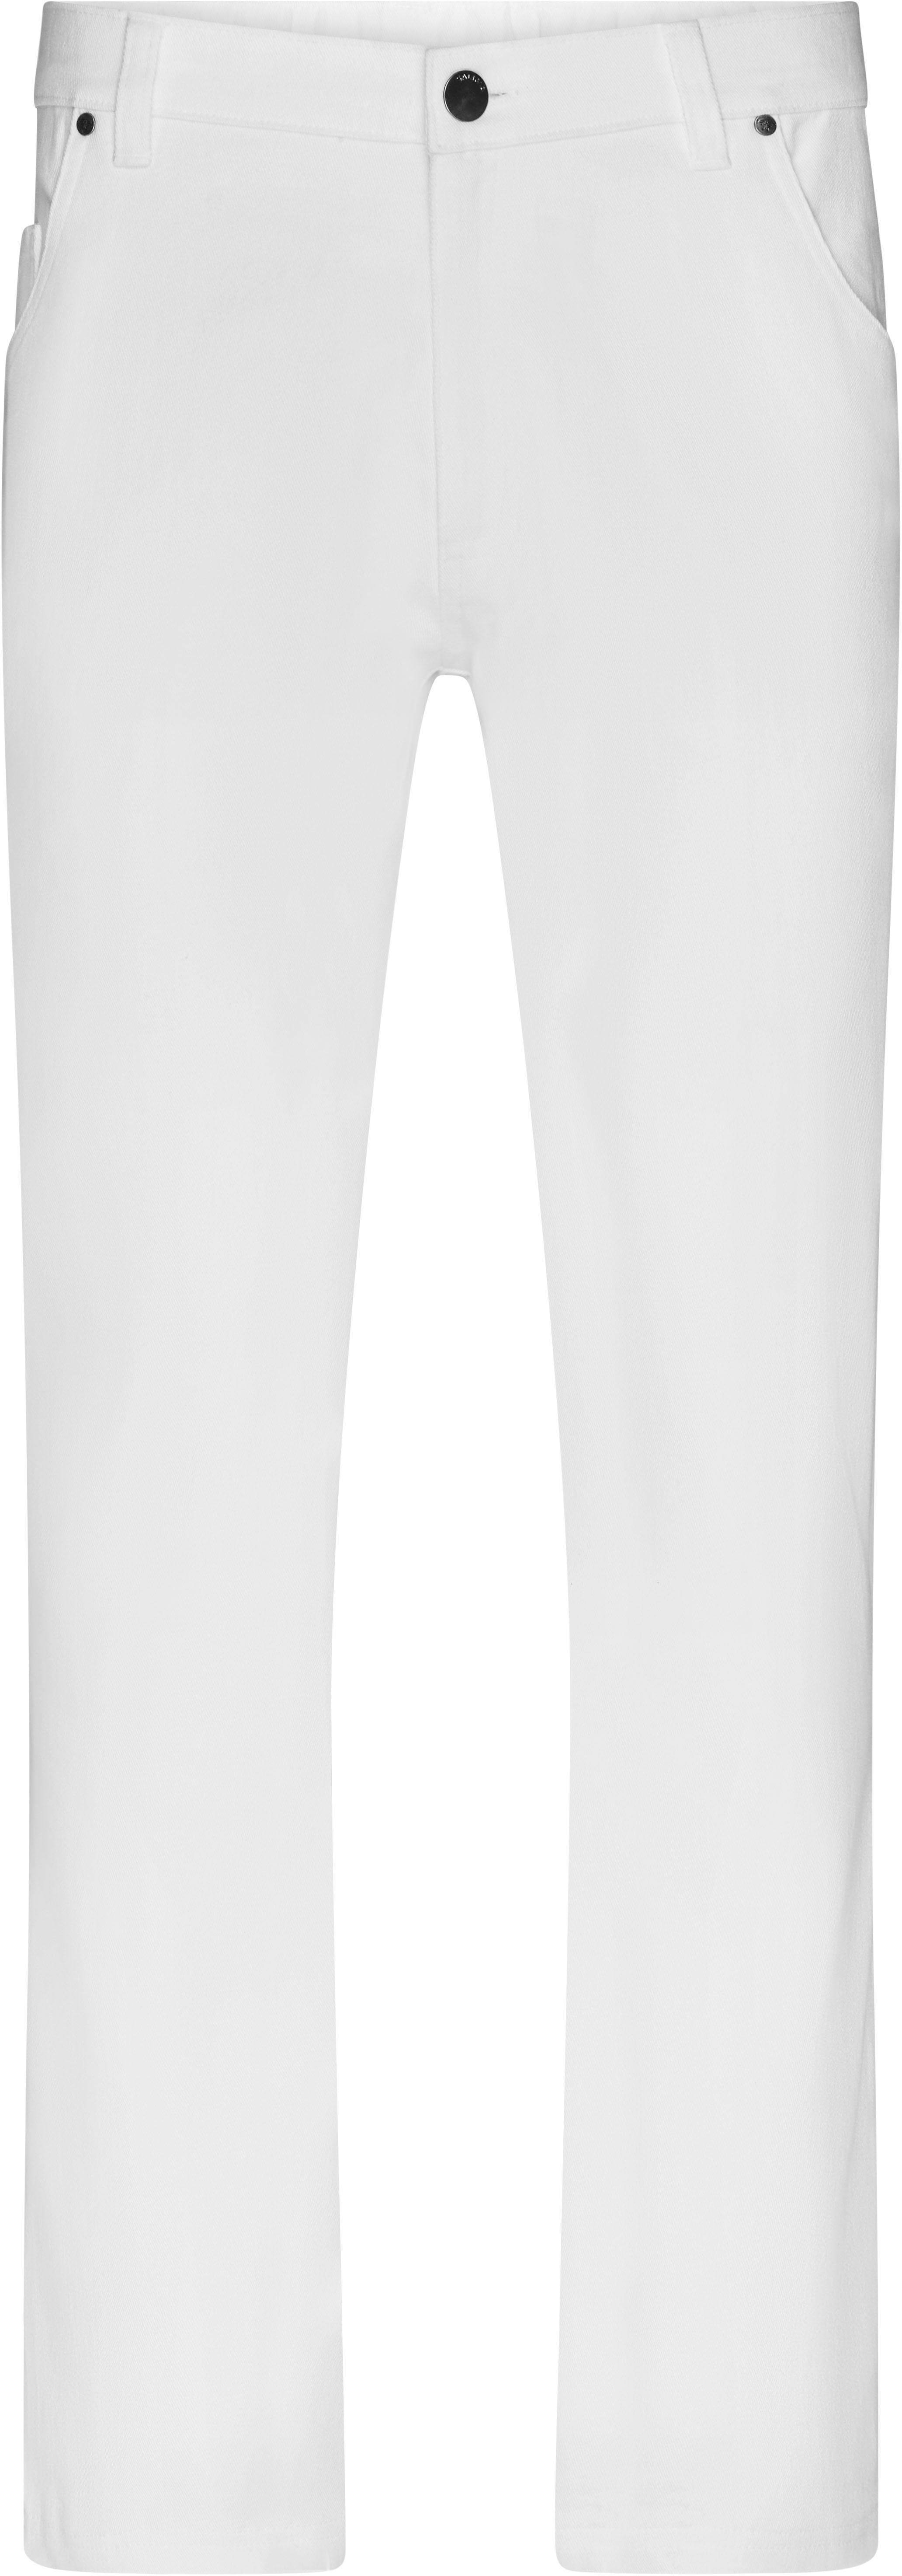 Pánské elastické kalhoty JN 3002 Barva: bílá, Velikost: 48